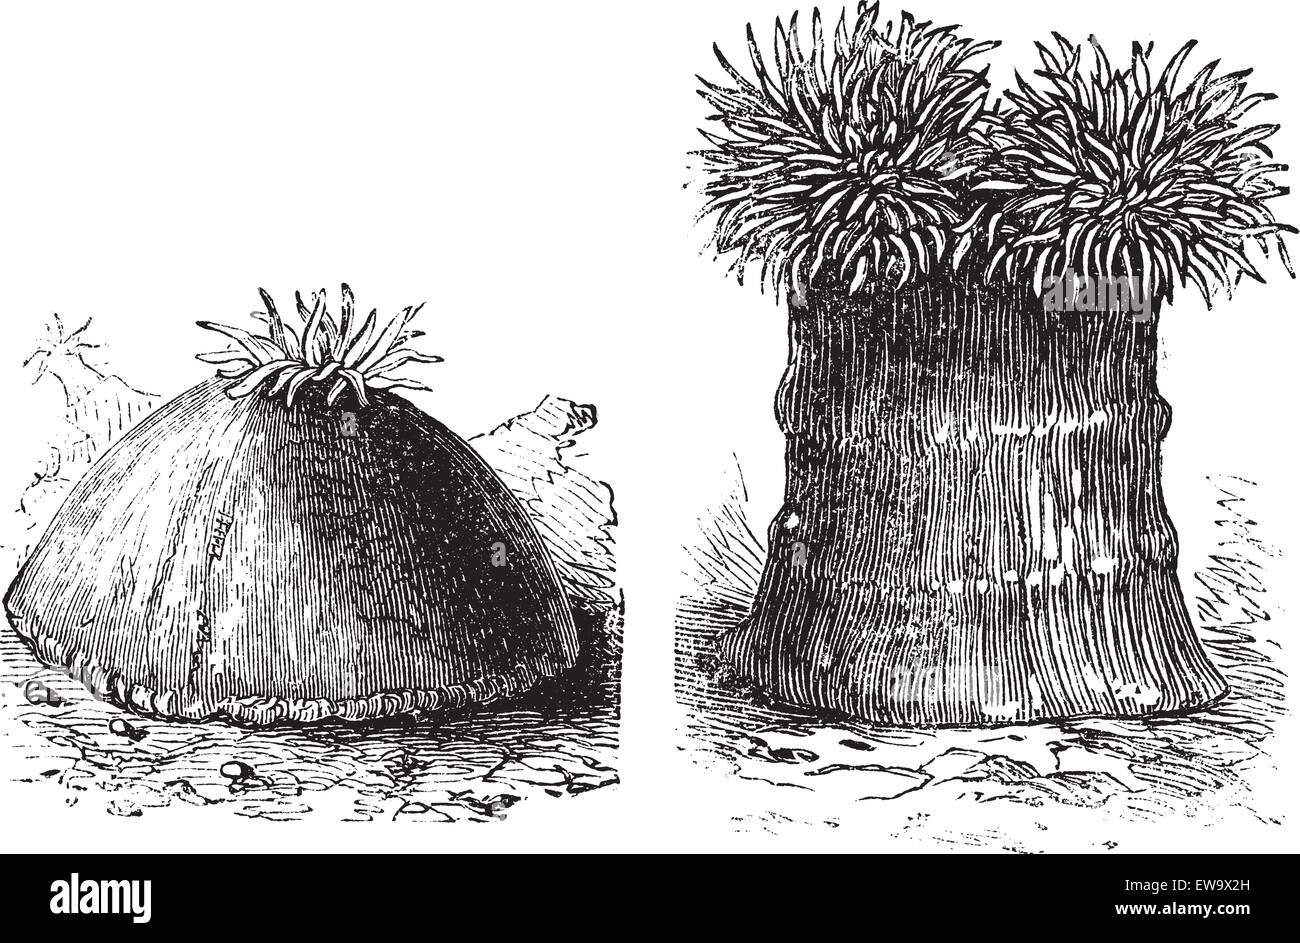 Öffnen und Schließen Seeanemone alte eingravierten Abbildung. Seeanemonen sind eine Gruppe von Wasser - Wohnung, räuberischen Tiere der Bestellung Actiniaria. Stock Vektor